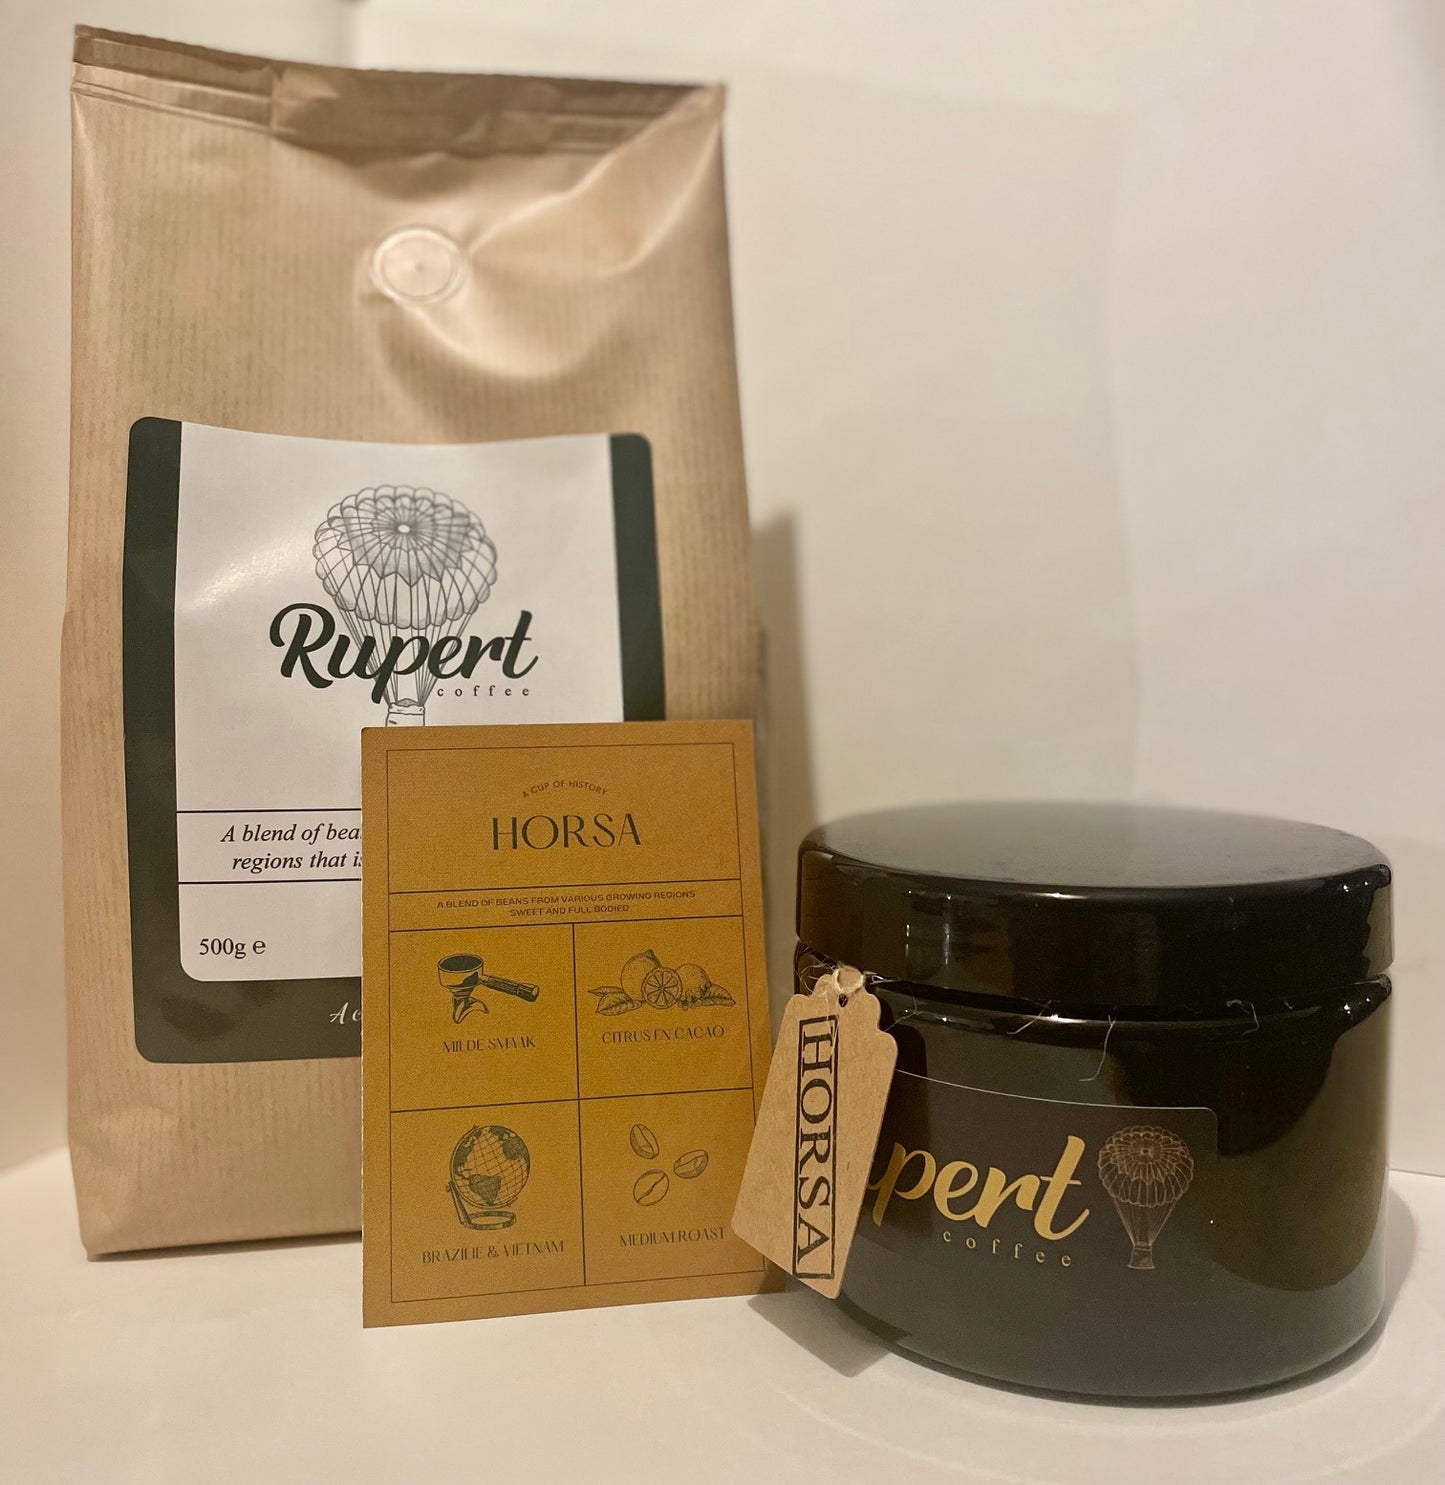 Rupert Coffee "Horsa"  herbruikbare koffieblik.  200gr